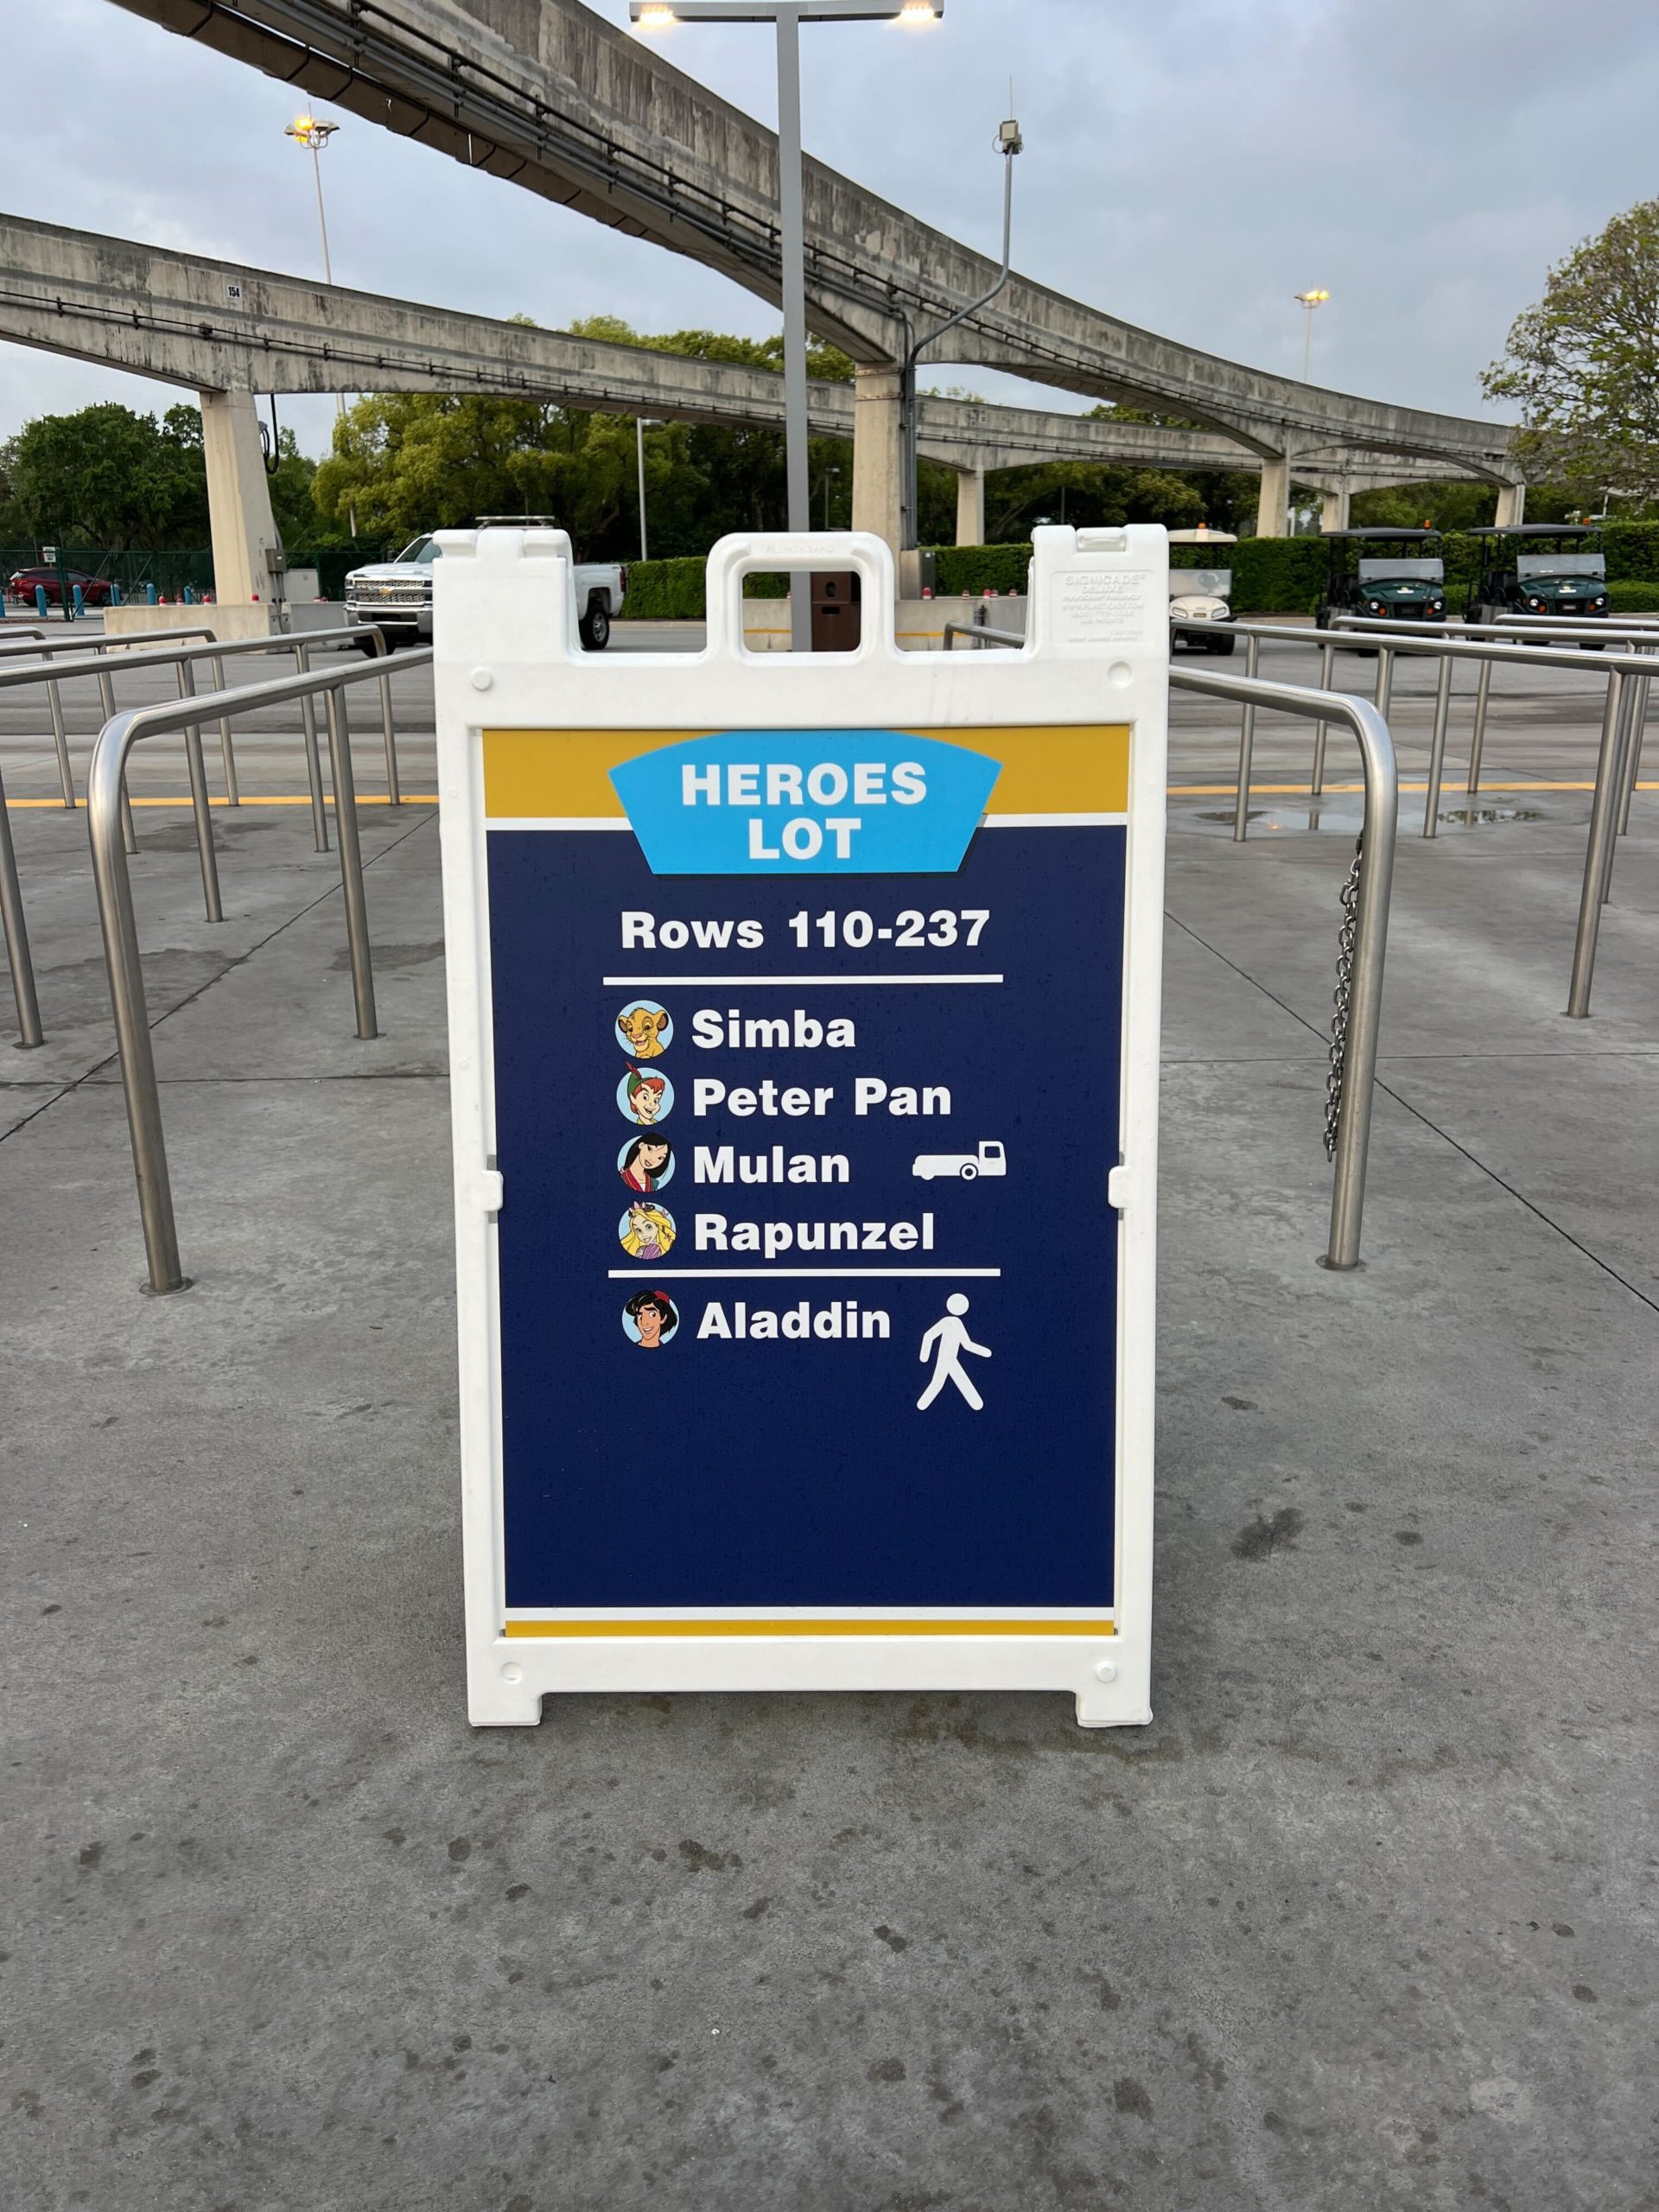 TTC parking lot signage